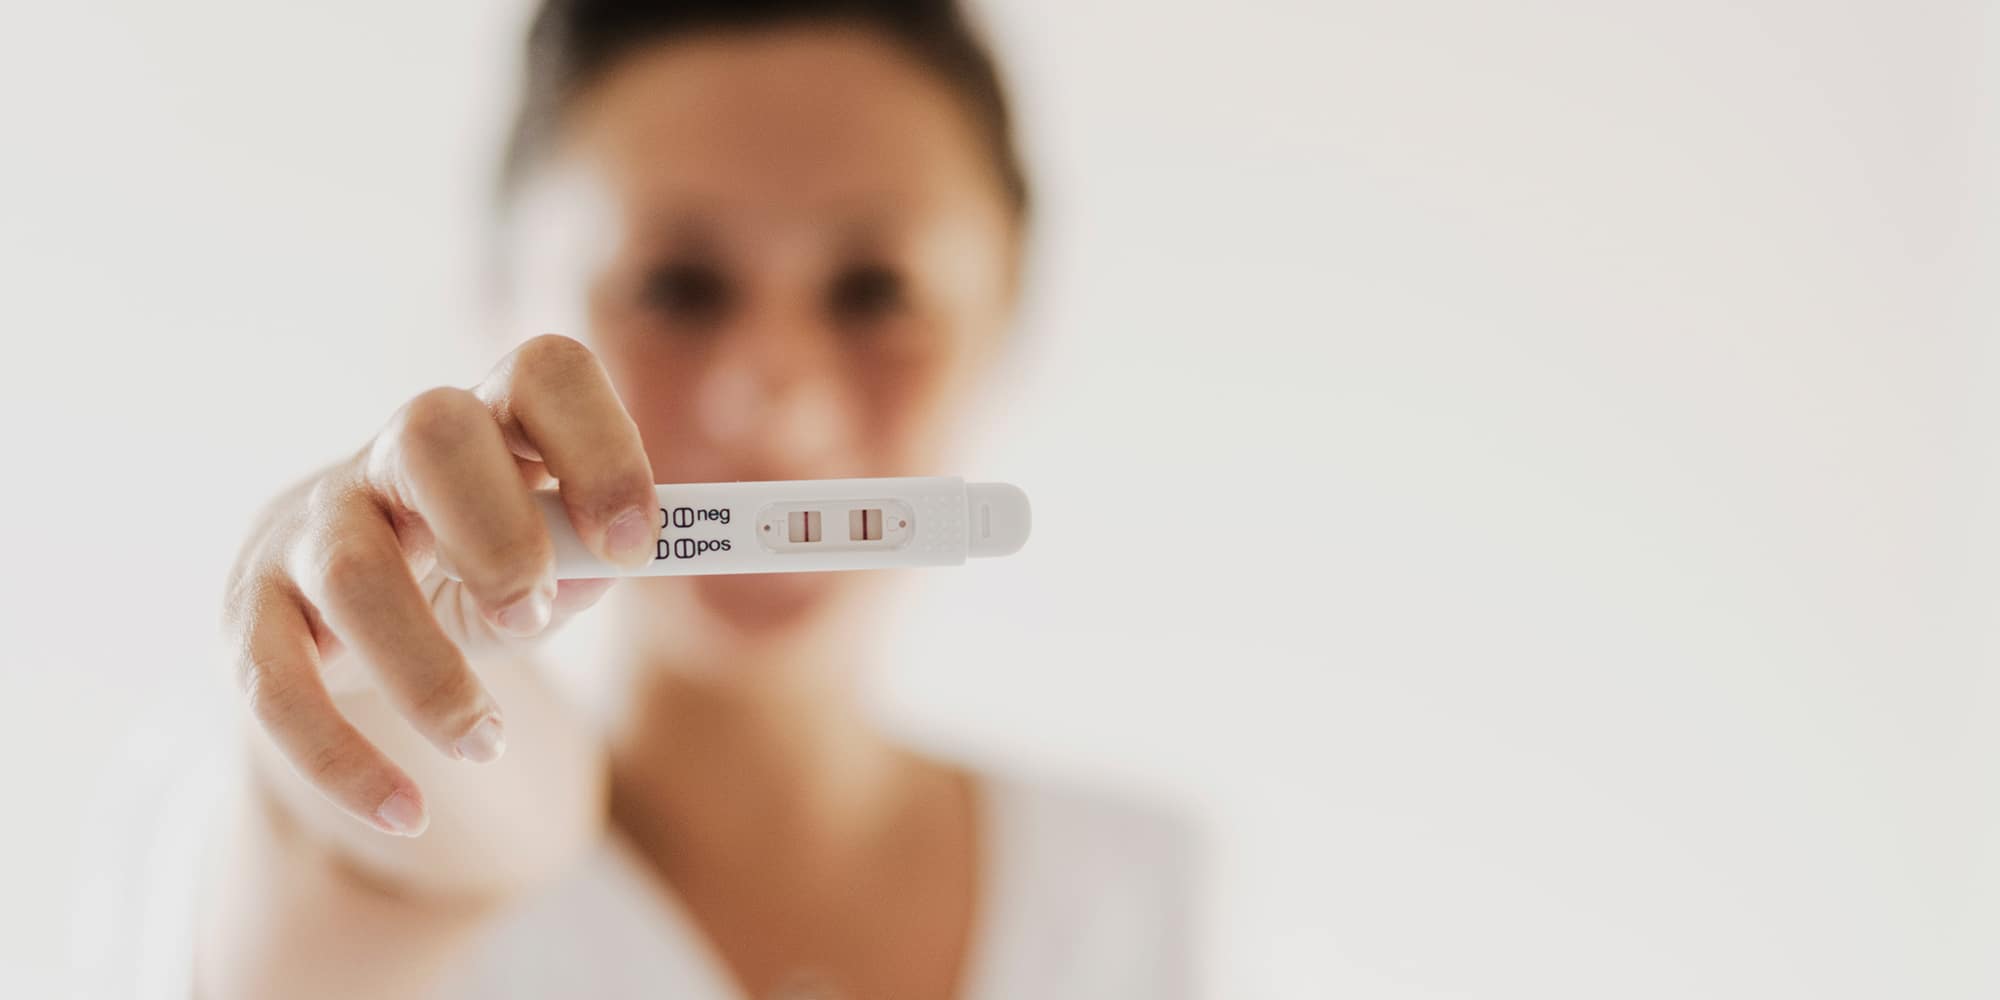 Teste de Gravidez - Detecta o positivo antes do atraso menstrual